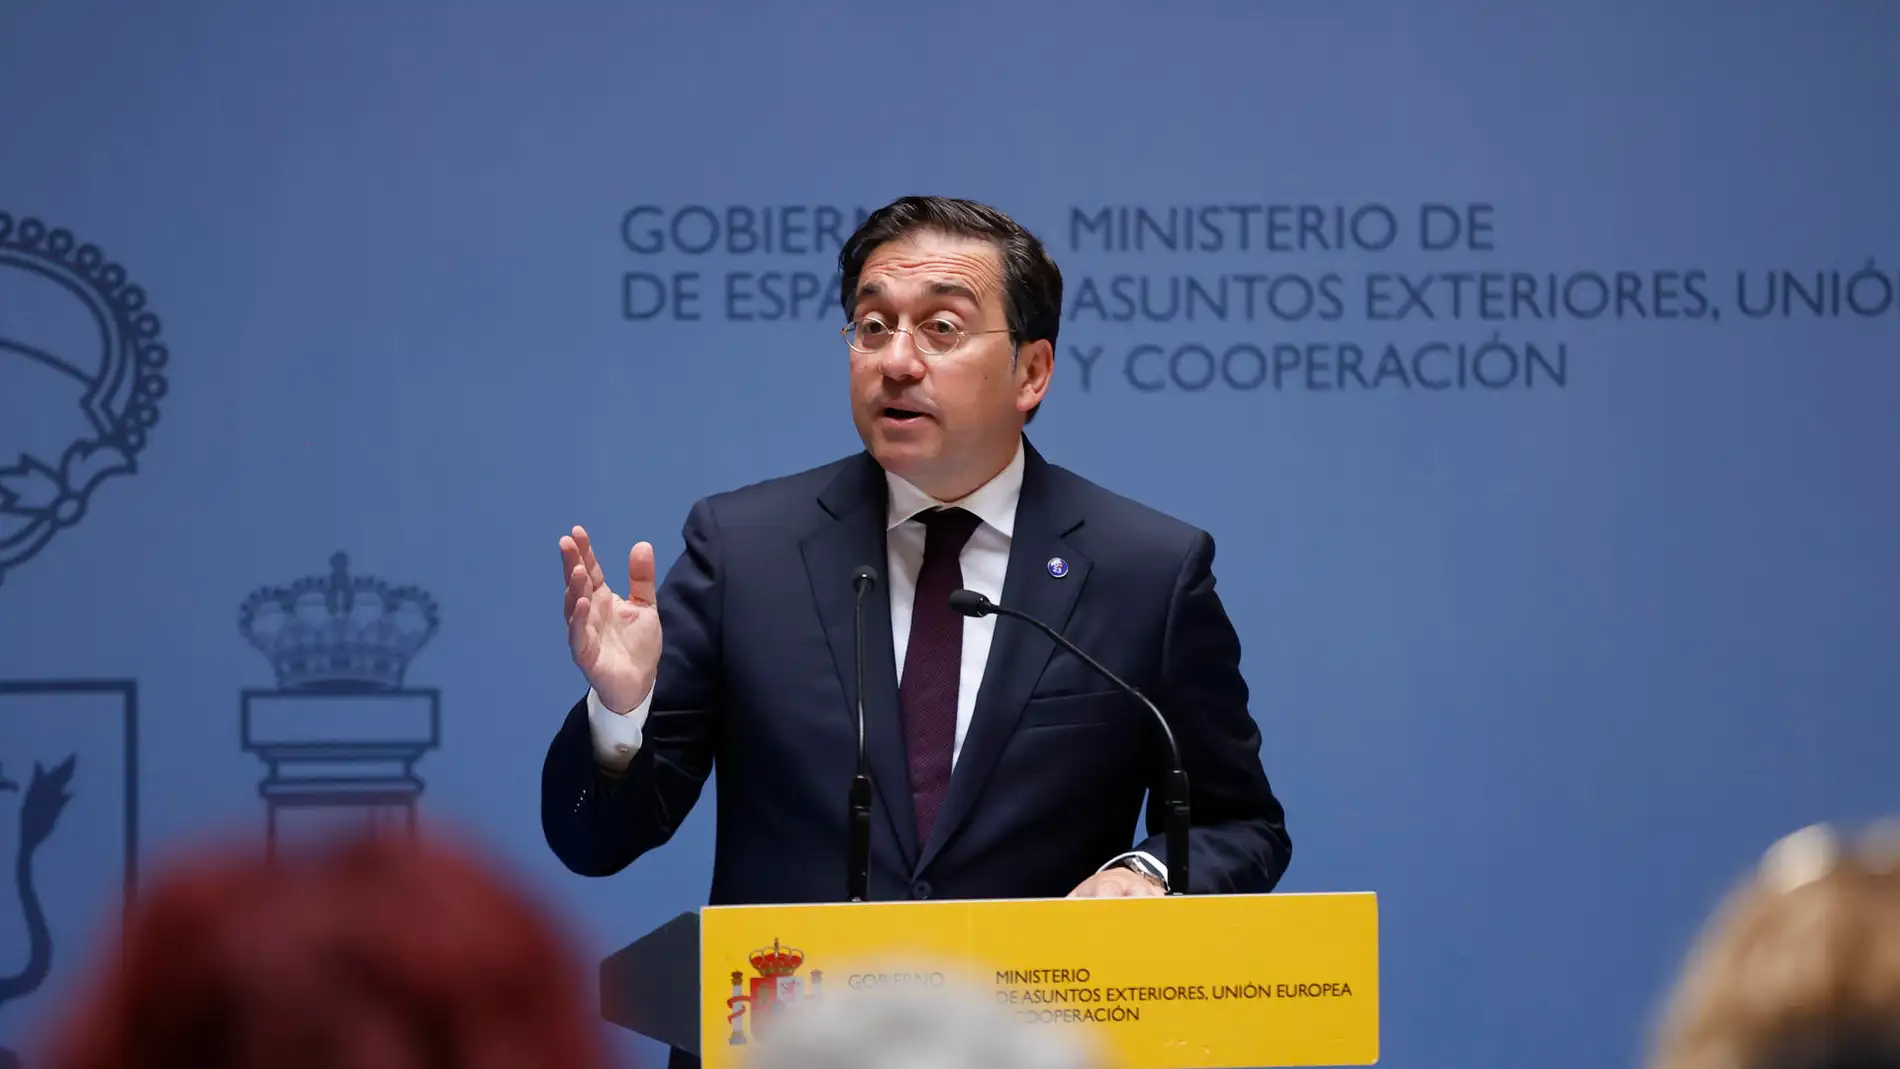 Imagen del ministro de Asuntos Exteriores, Unión Europea y Cooperación en funciones, José Manuel Albares.